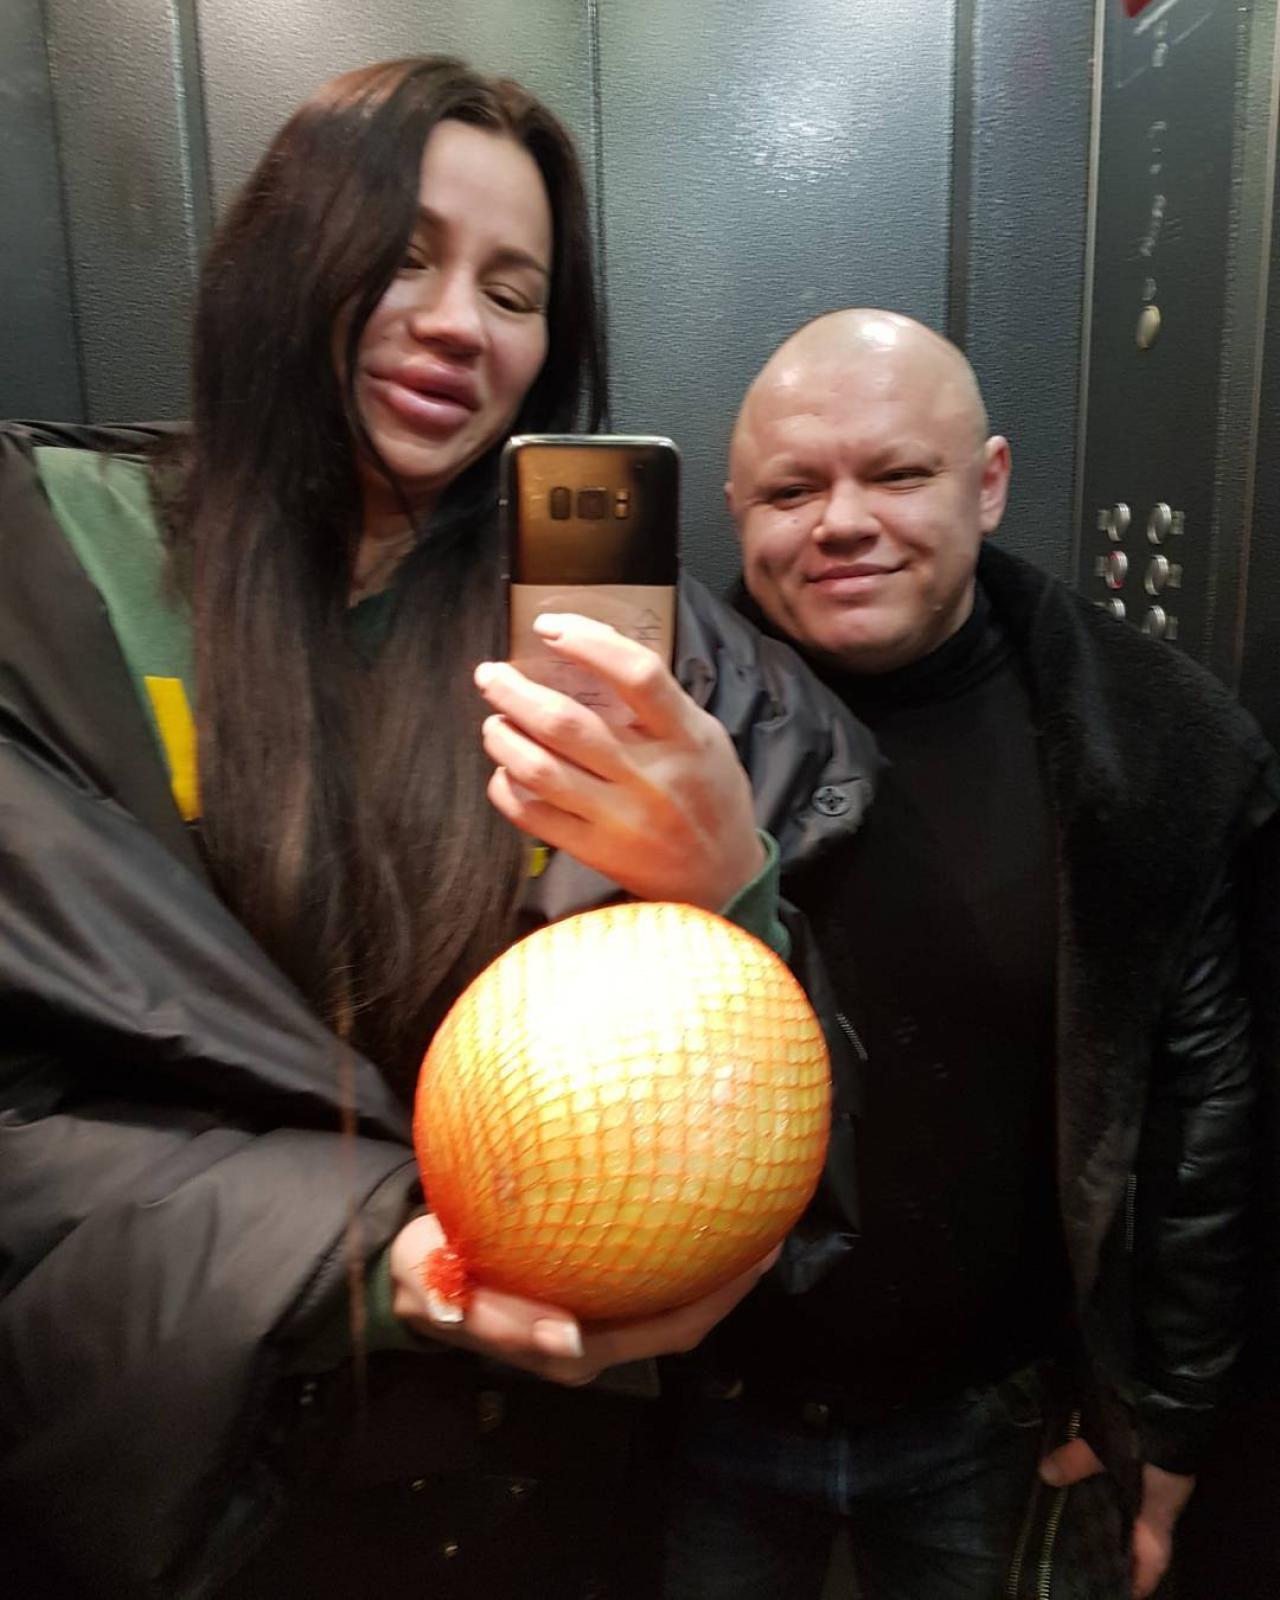 Анна Тураева и ее девушка